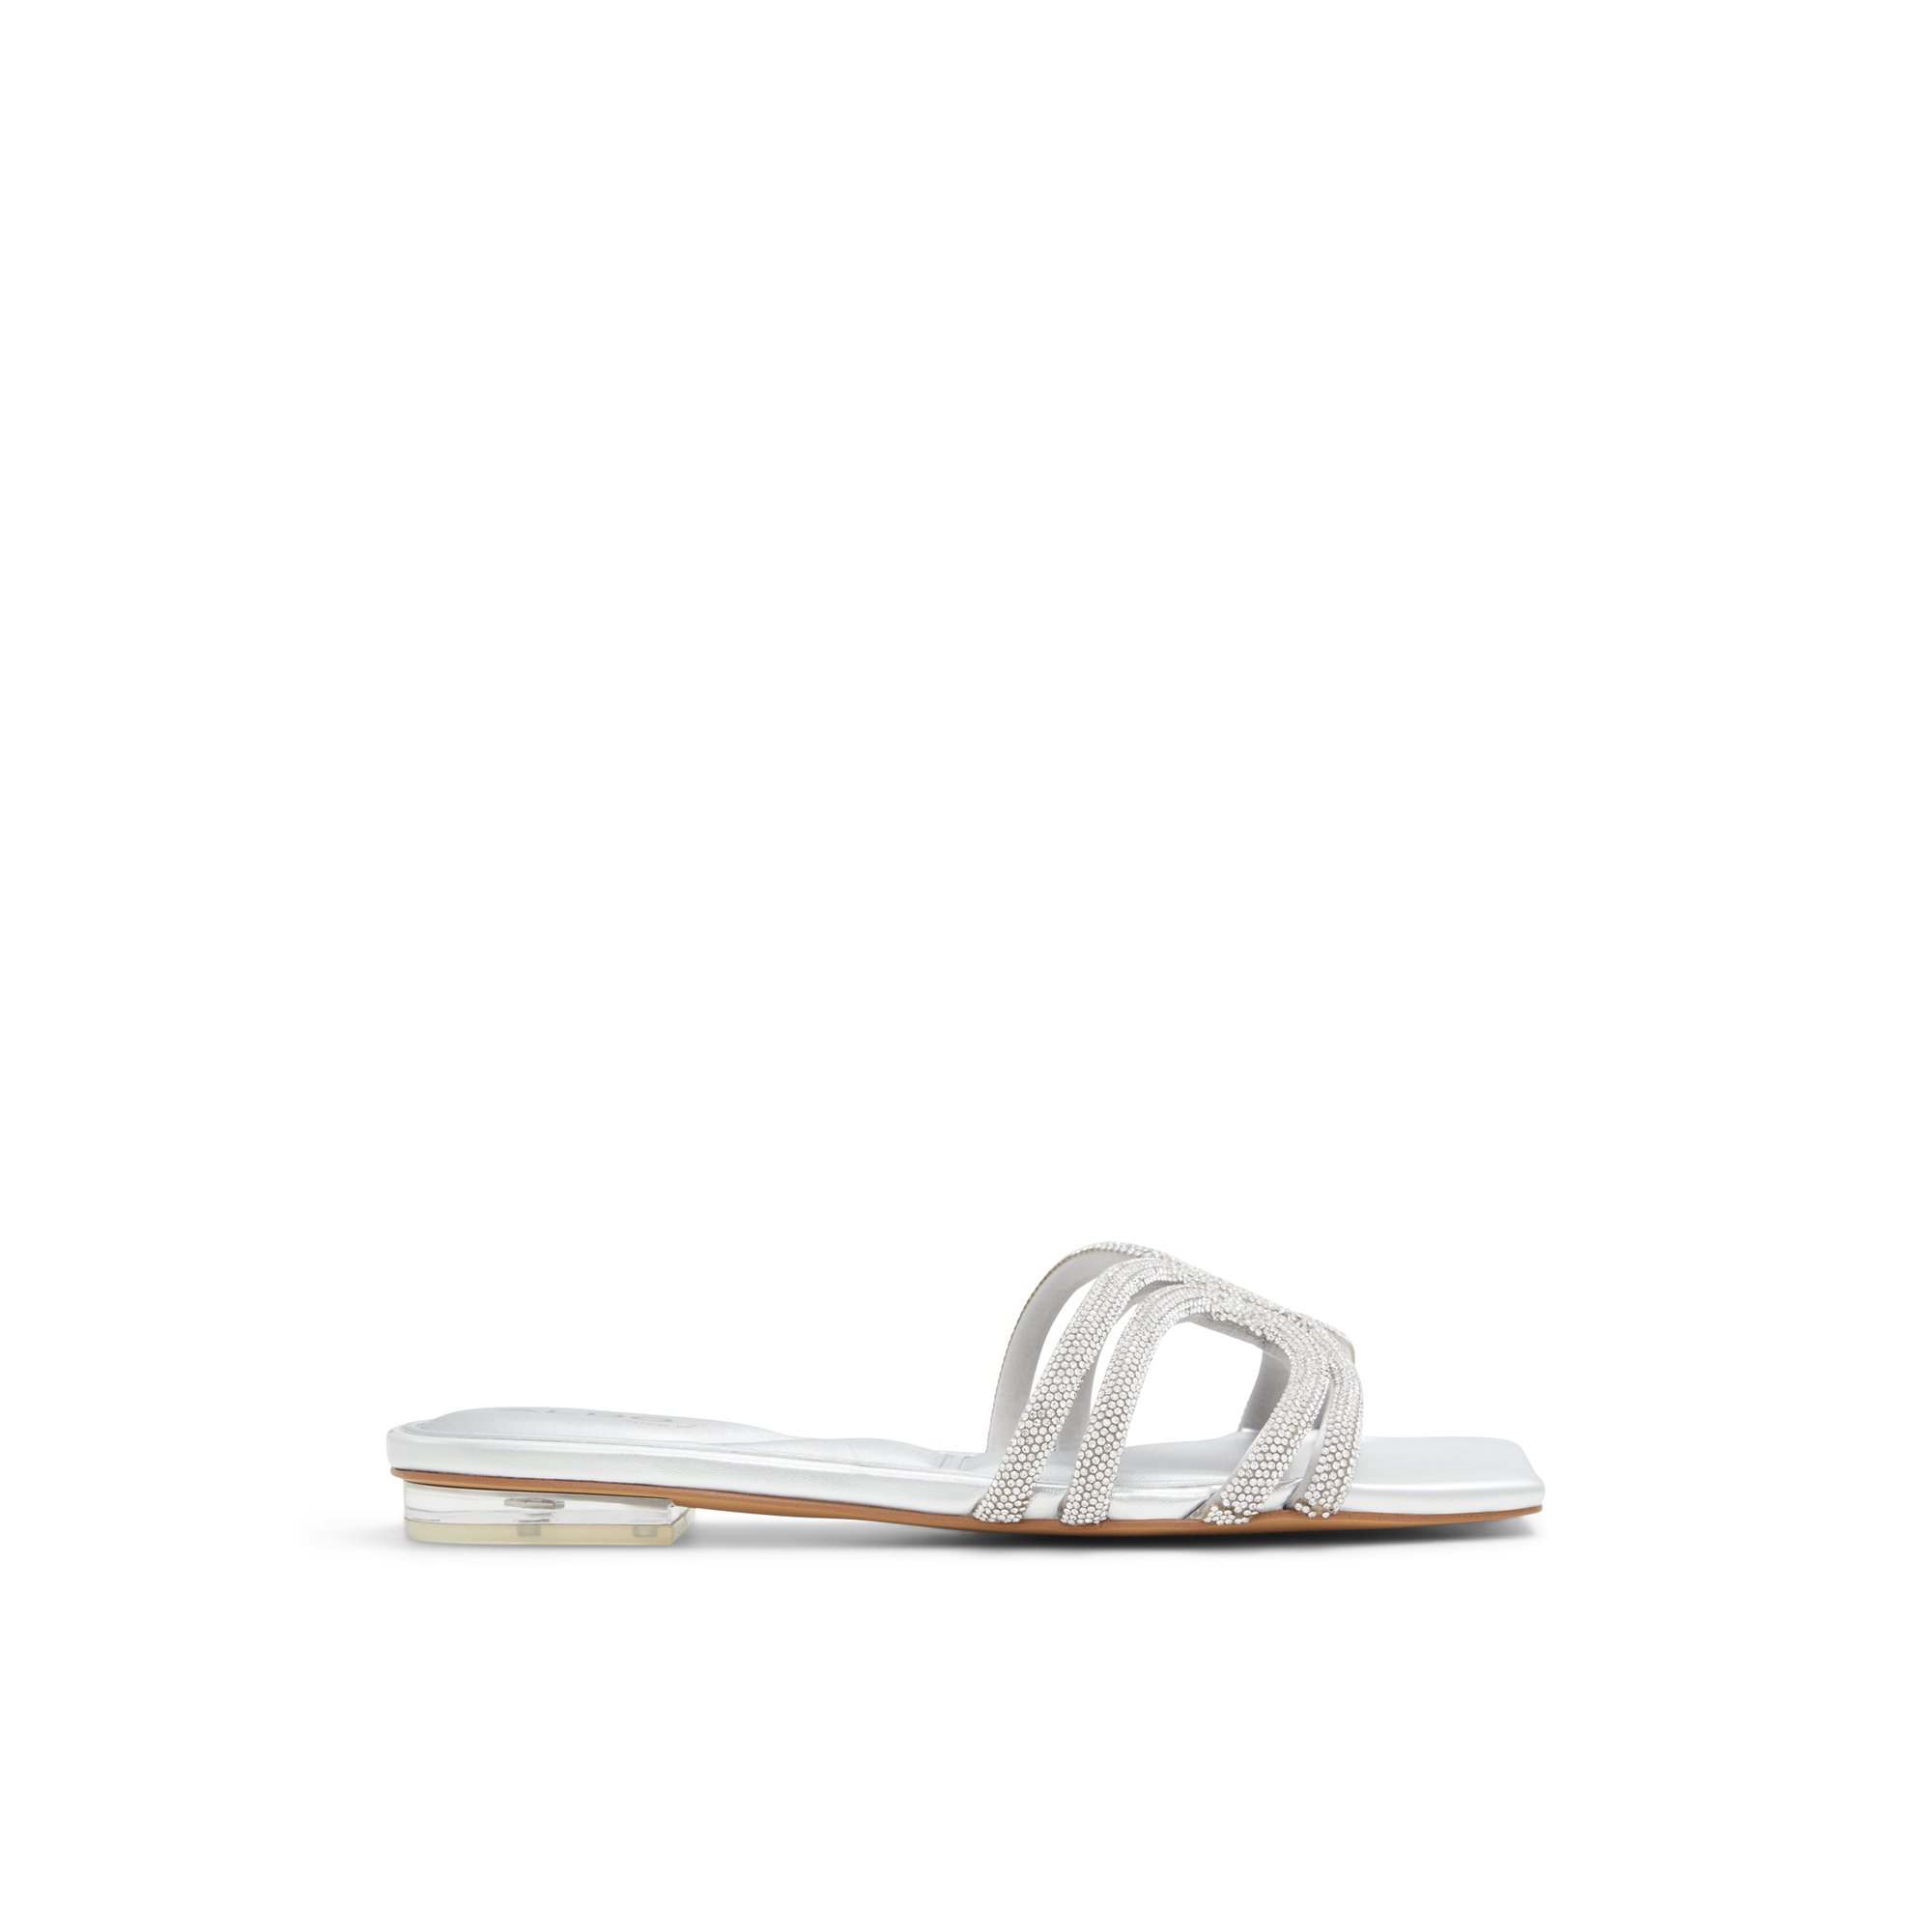 ALDO Seekoia - Women's Flat Sandals - Silver